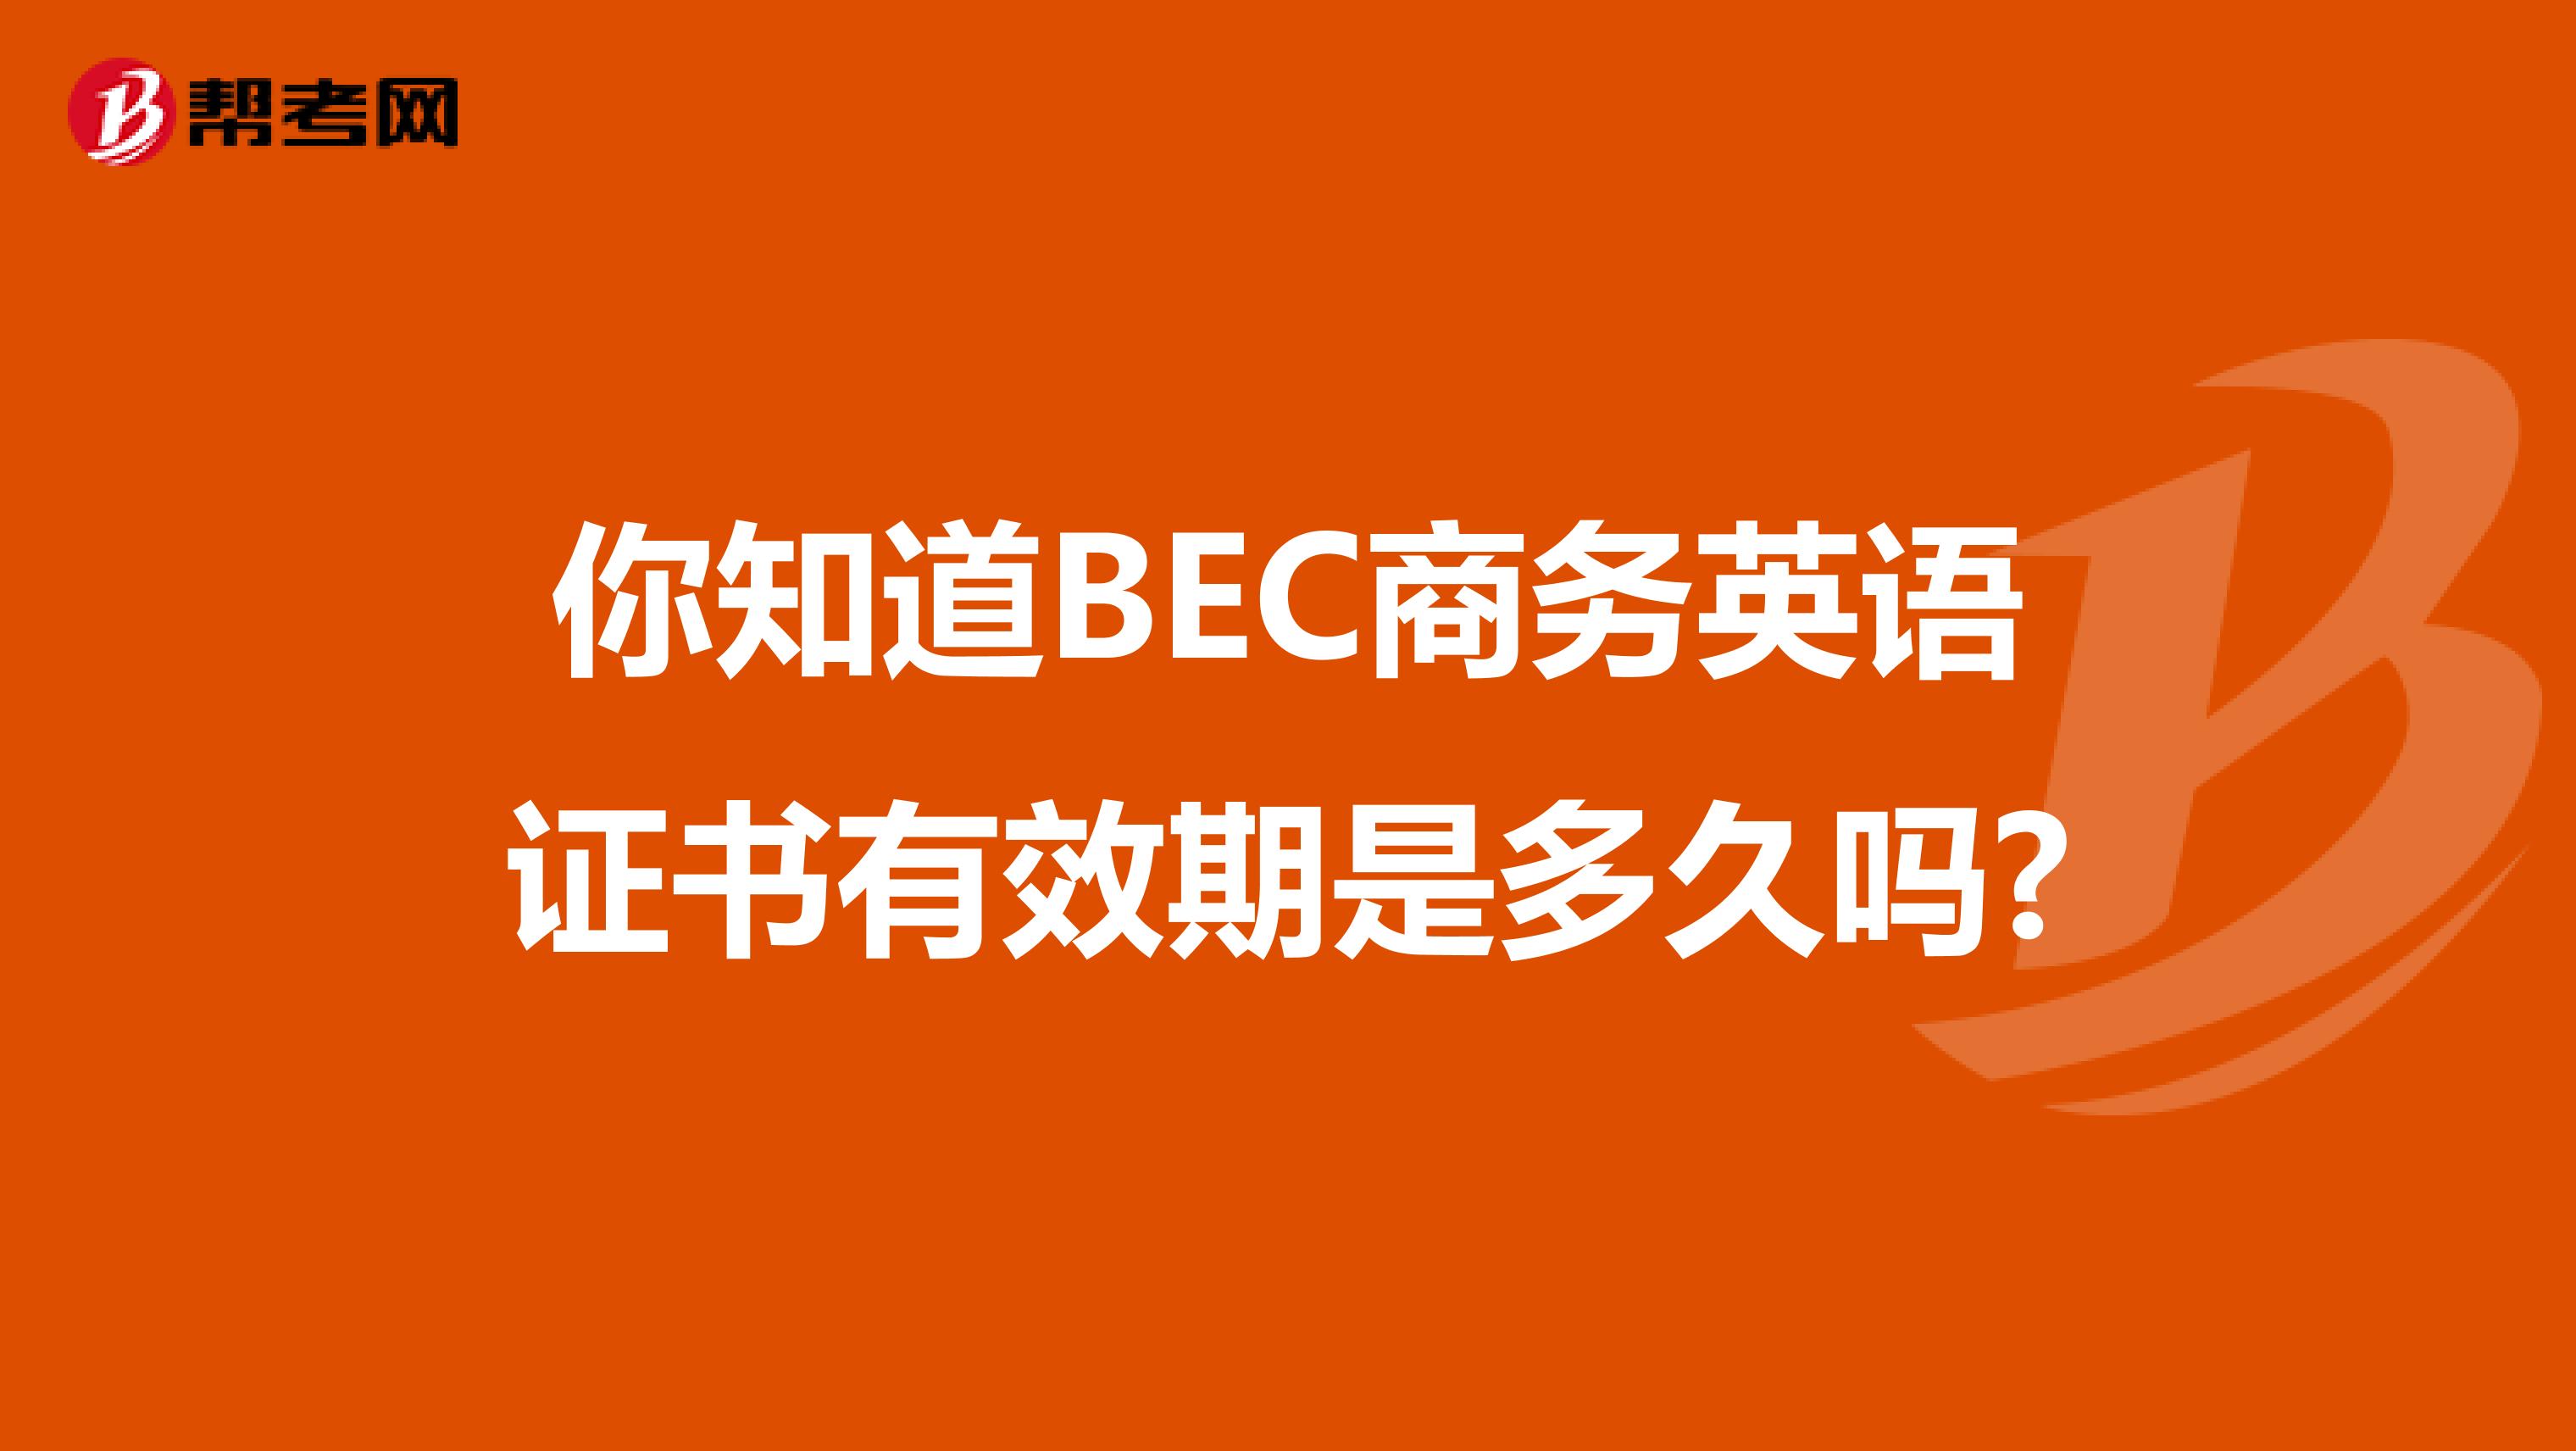 你知道BEC商务英语证书有效期是多久吗?